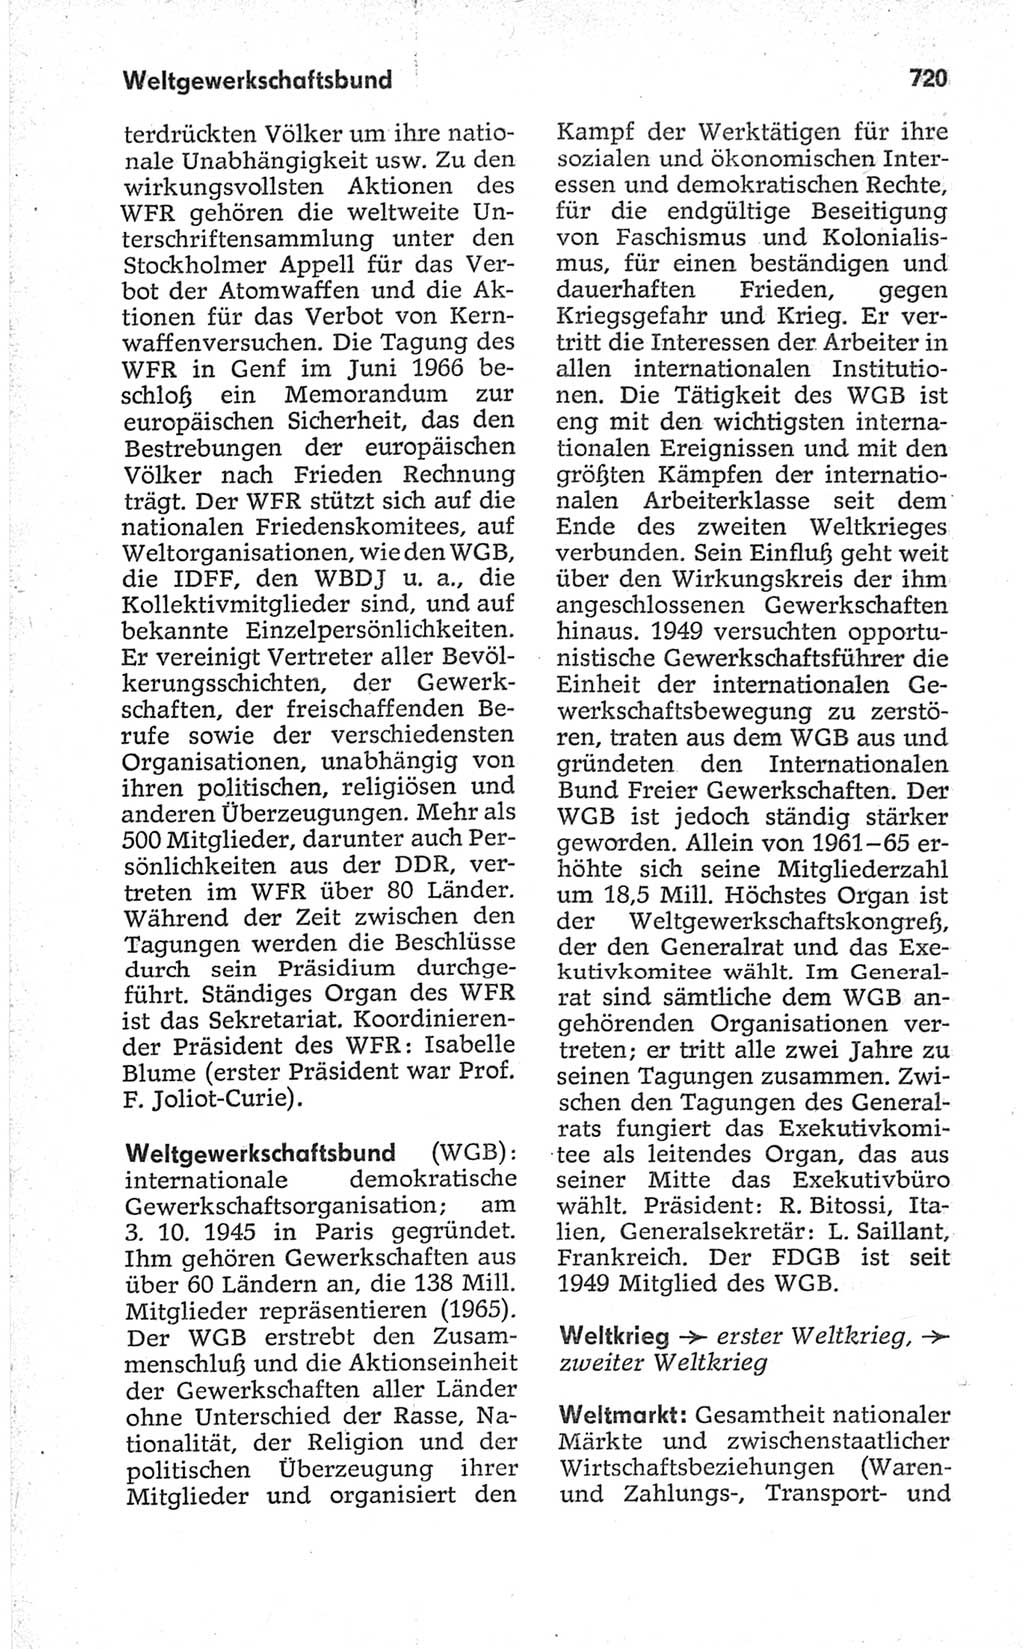 Kleines politisches Wörterbuch [Deutsche Demokratische Republik (DDR)] 1967, Seite 720 (Kl. pol. Wb. DDR 1967, S. 720)